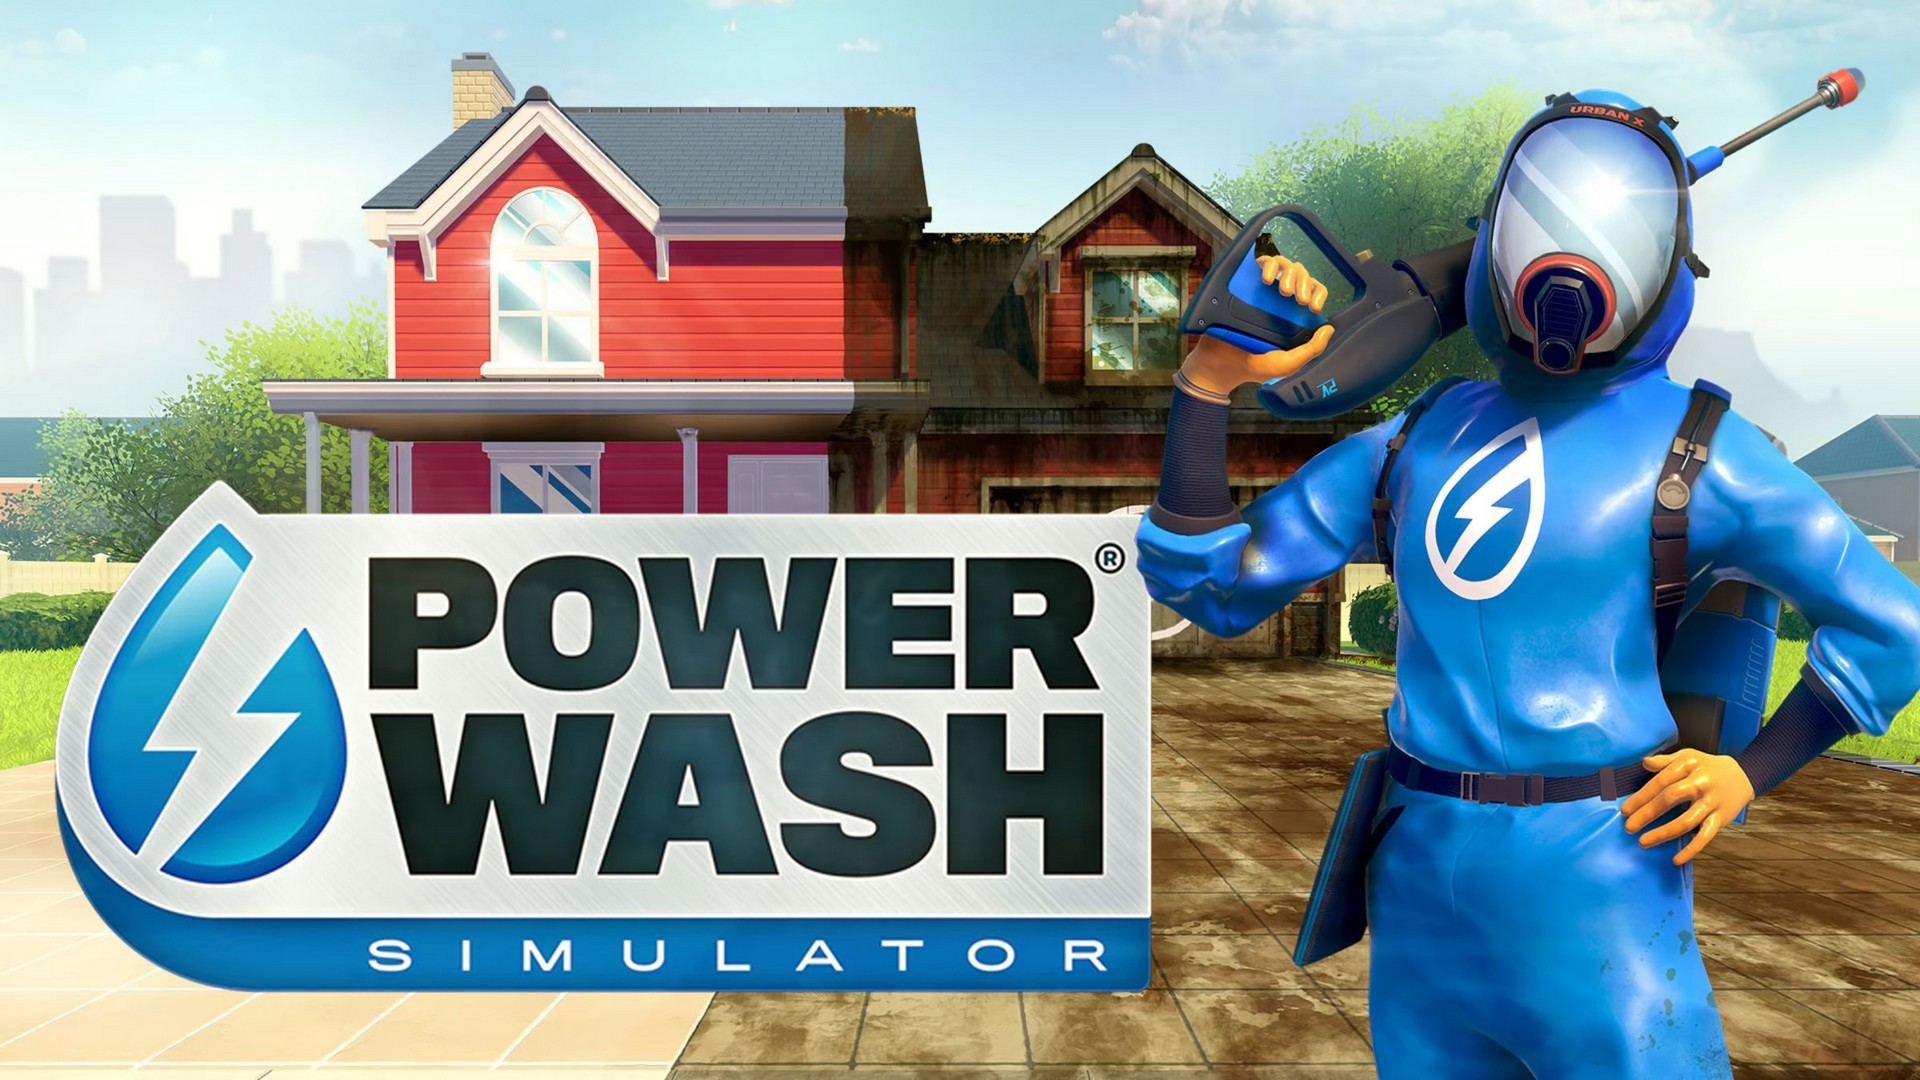 PowerWash Simulator getting boxed download code release on June